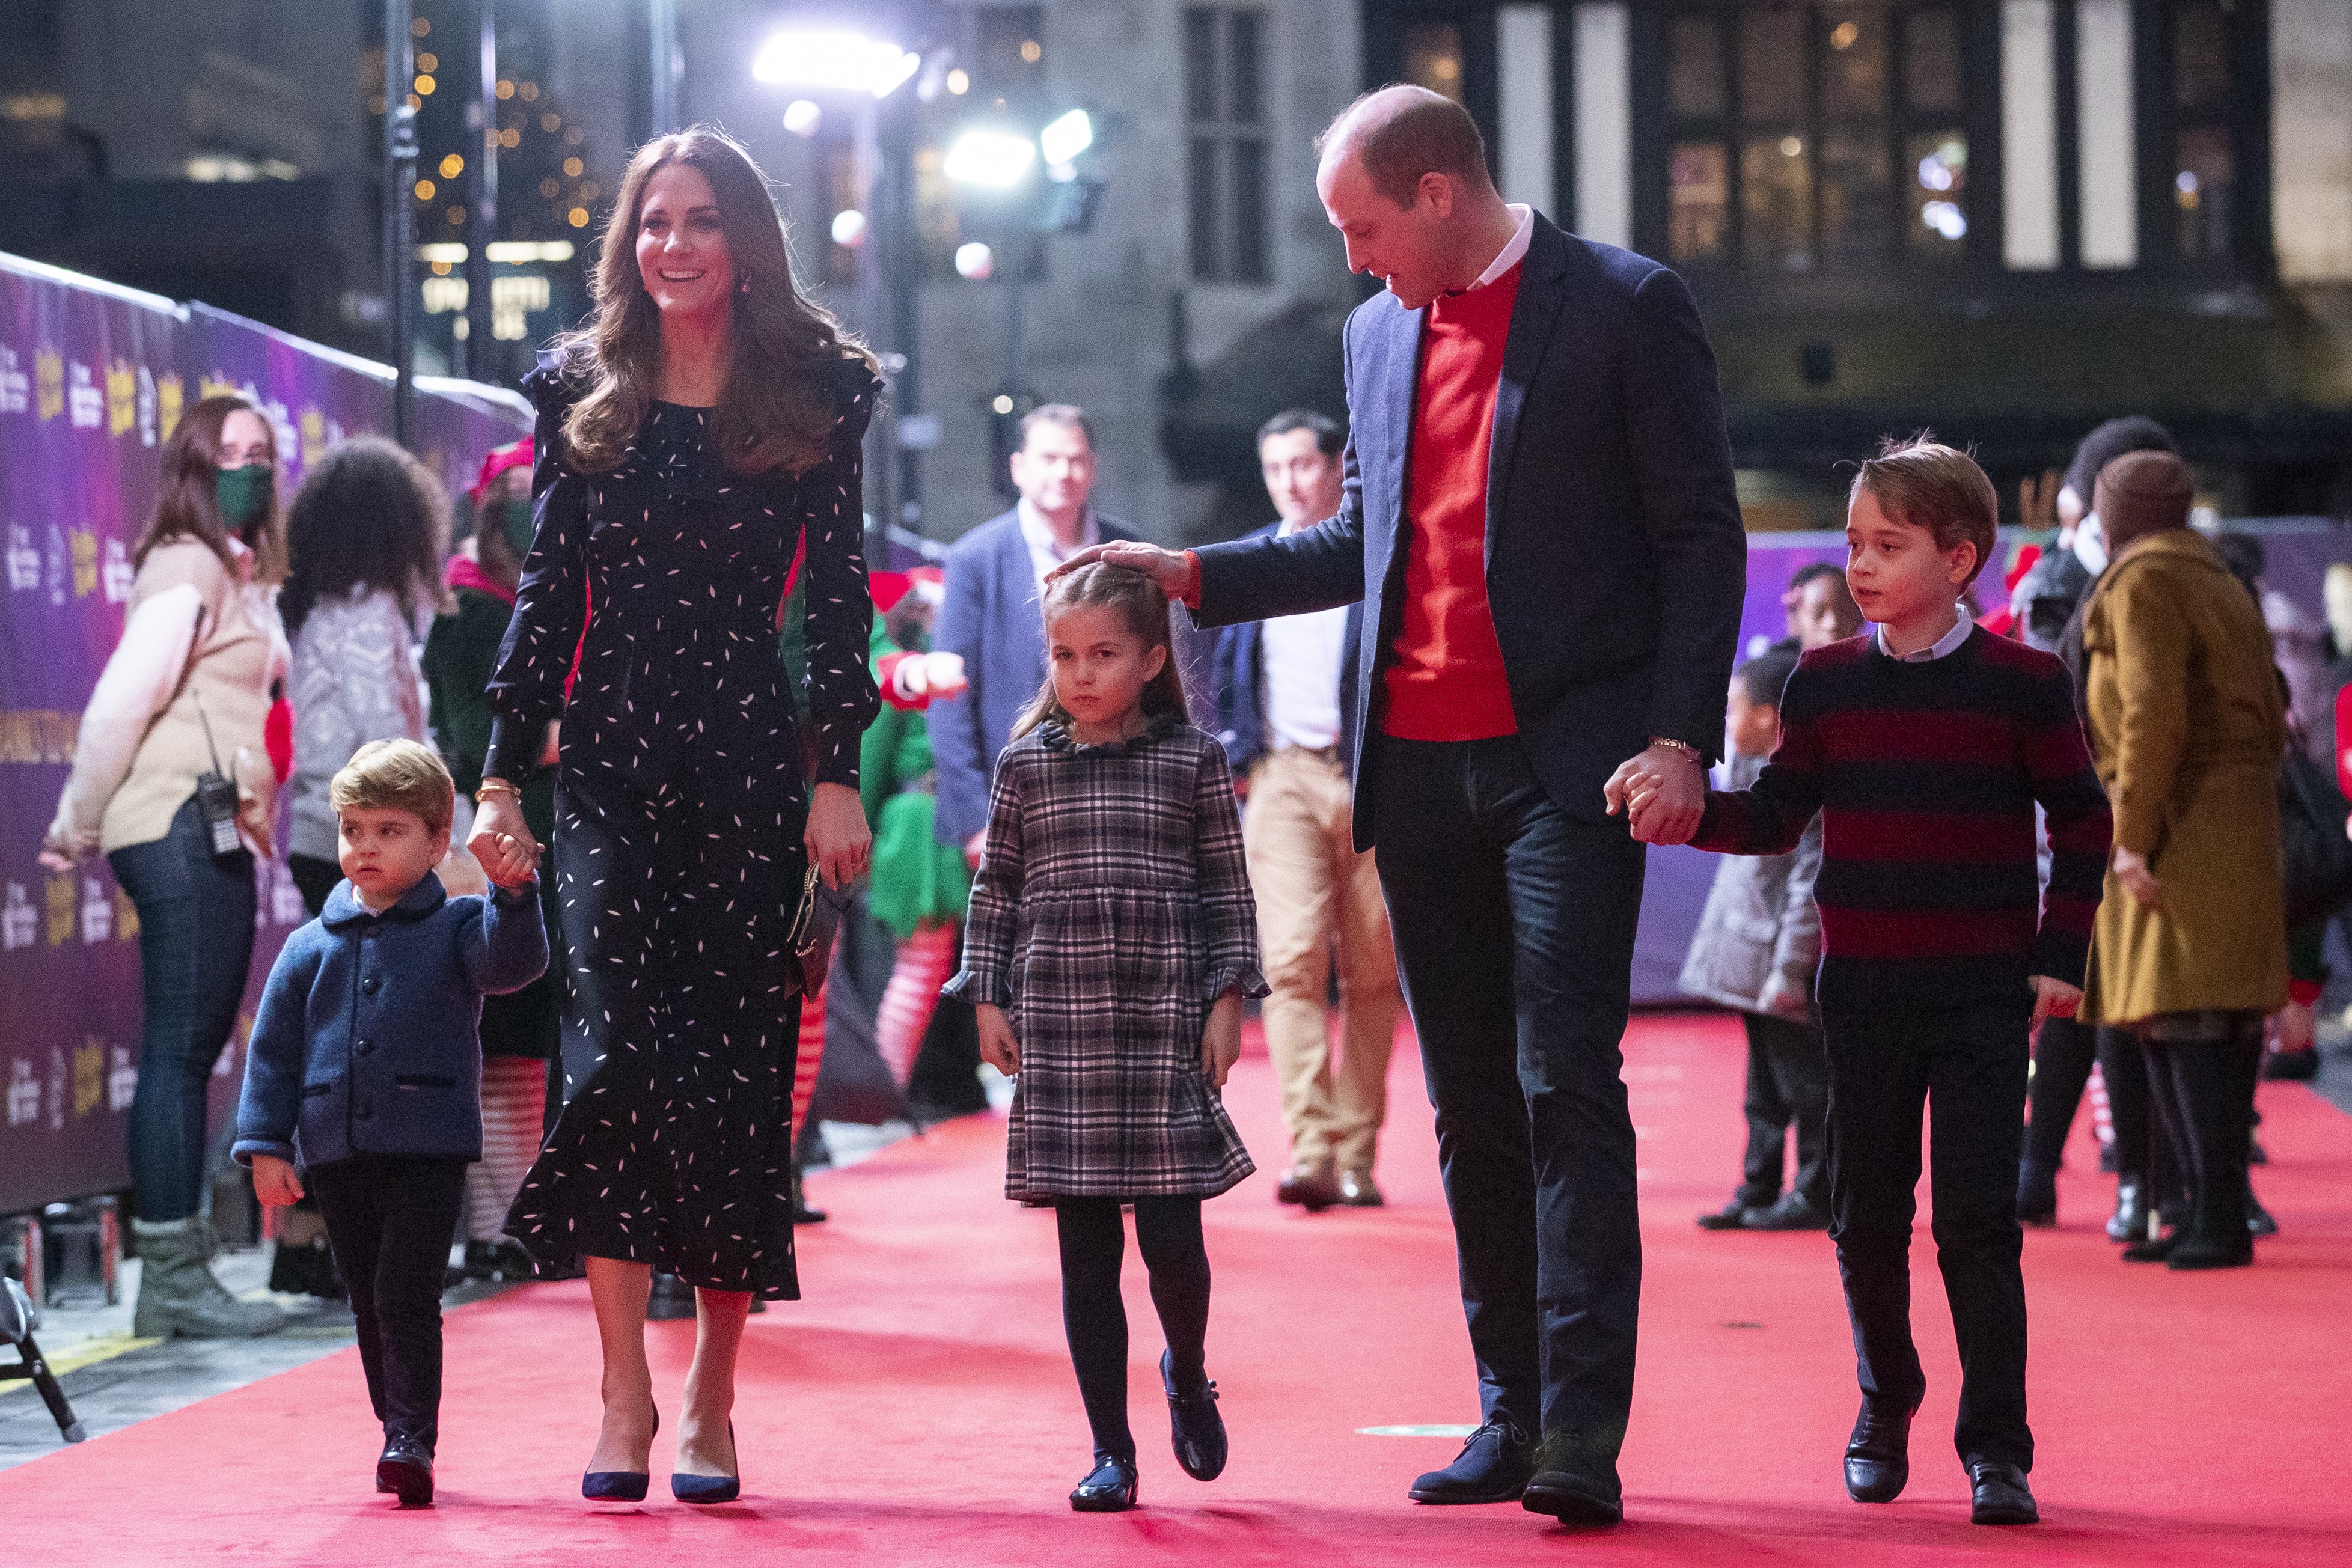 Príncipe William, duque de Cambridge, Catherine, duquesa de Cambridge, e seus filhos, o príncipe Louis, a princesa Charlotte e o príncipe George, durante uma apresentação especial no Palladium Theatre de Londres (Foto: Getty Images)